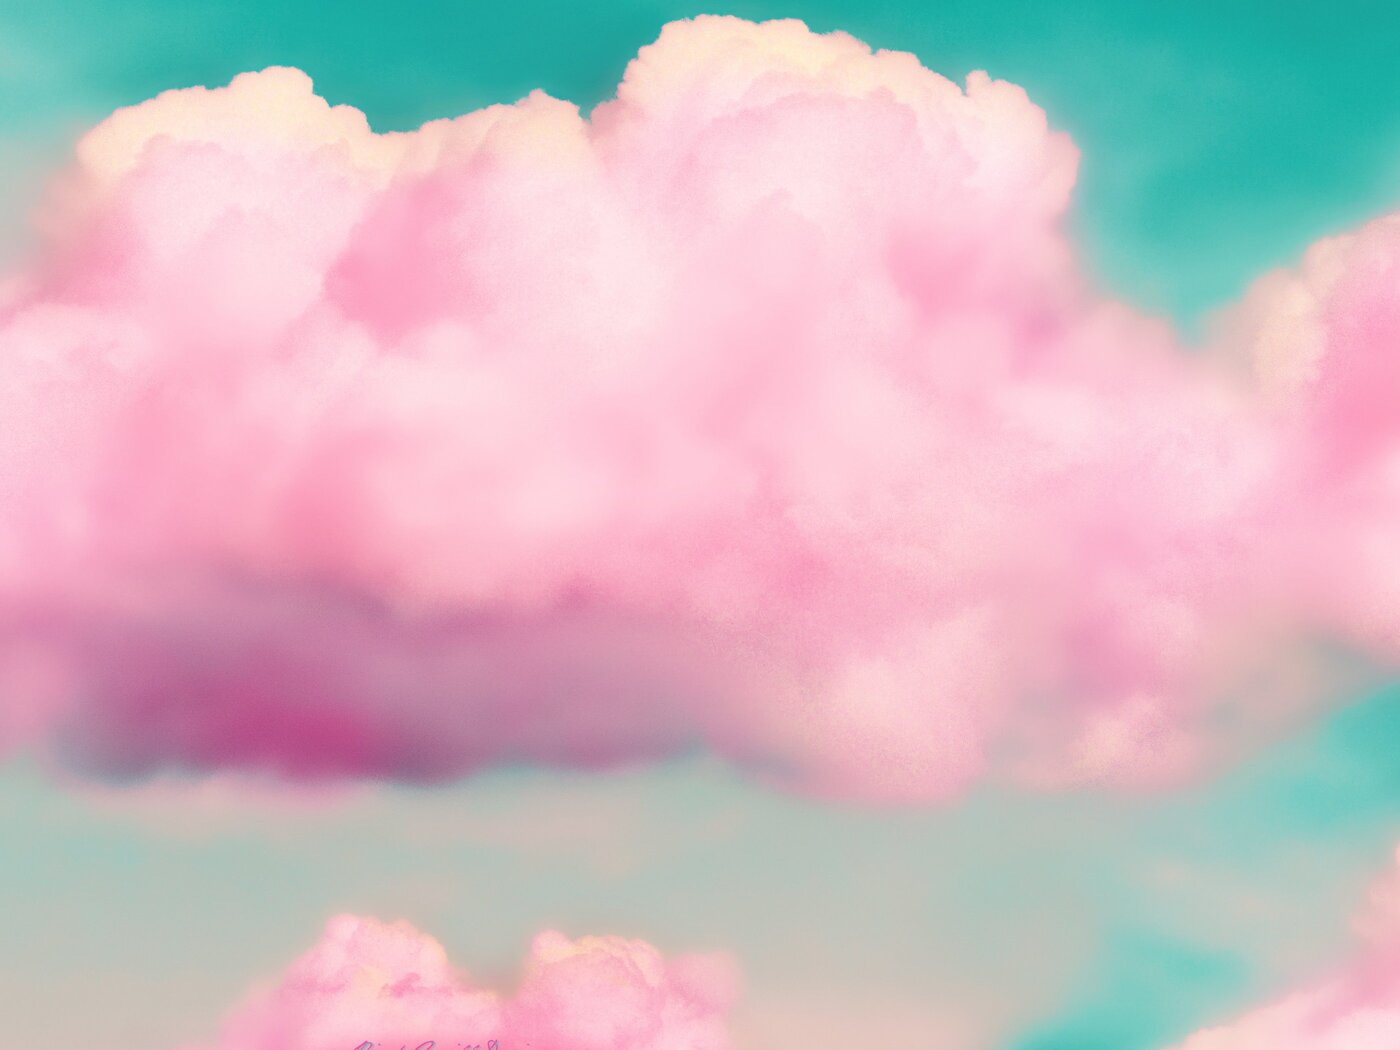 Cute Pink Cloud Wallpapers